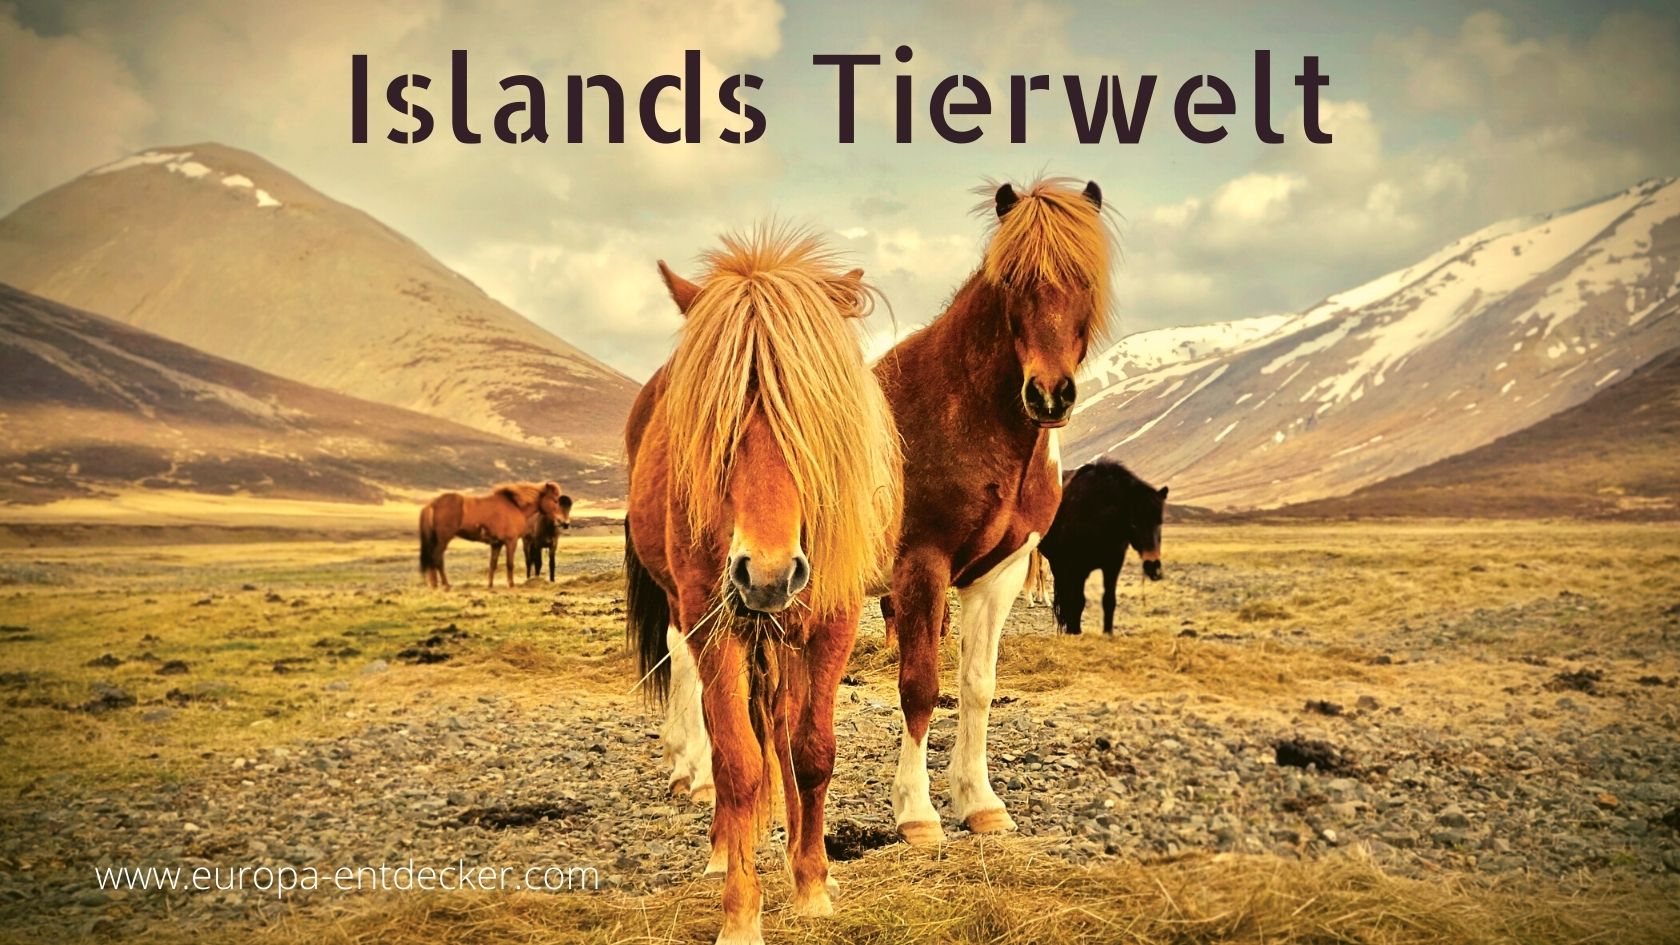 Islands große Tierwelt